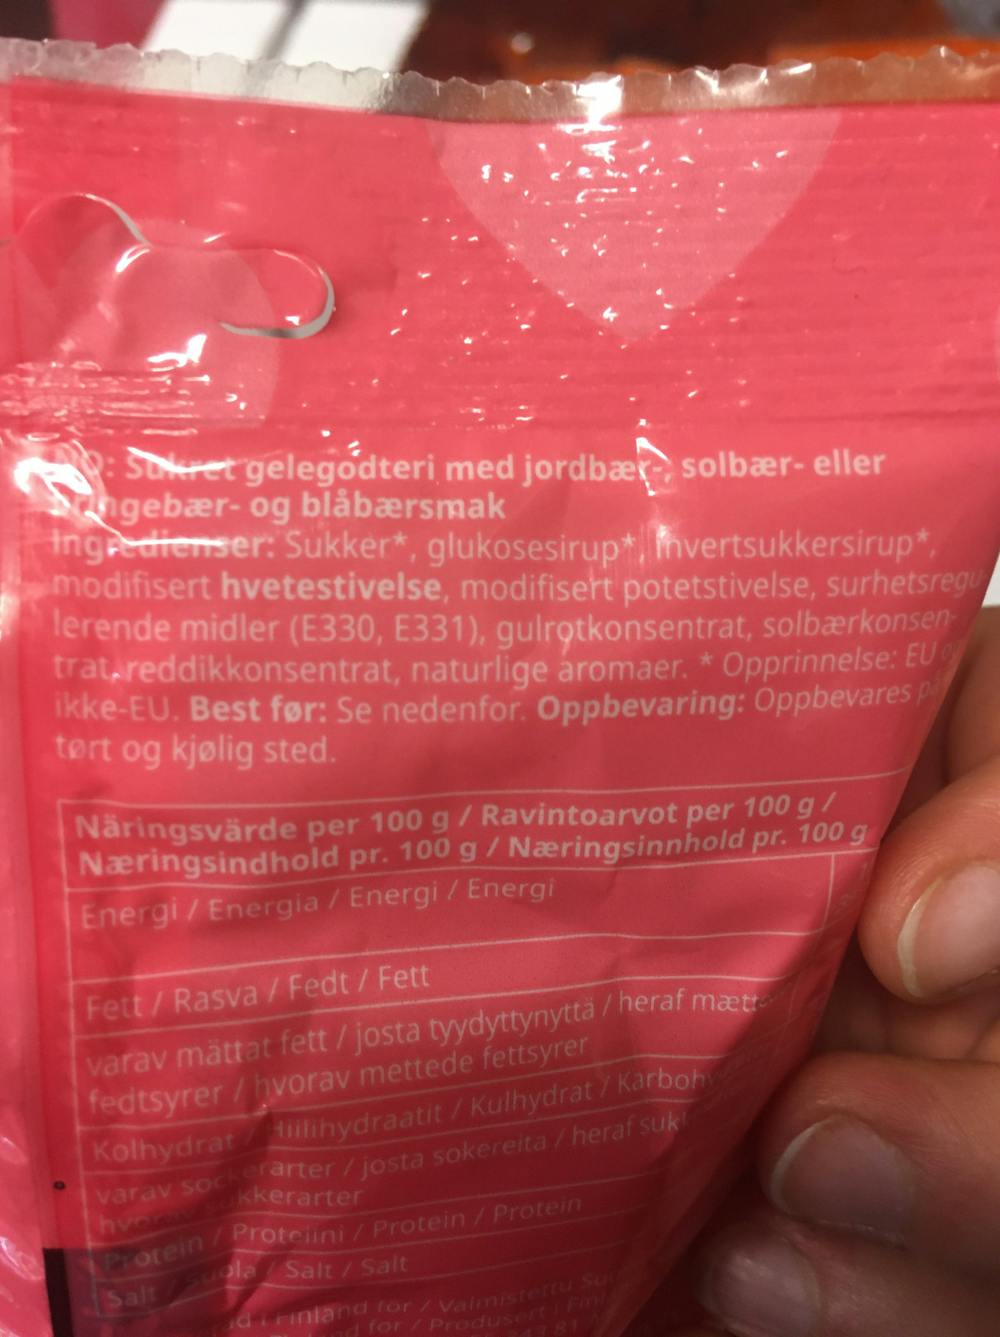 Ingrediensliste - Lördagsgodis, jelly candy with berry flavour, IKEA